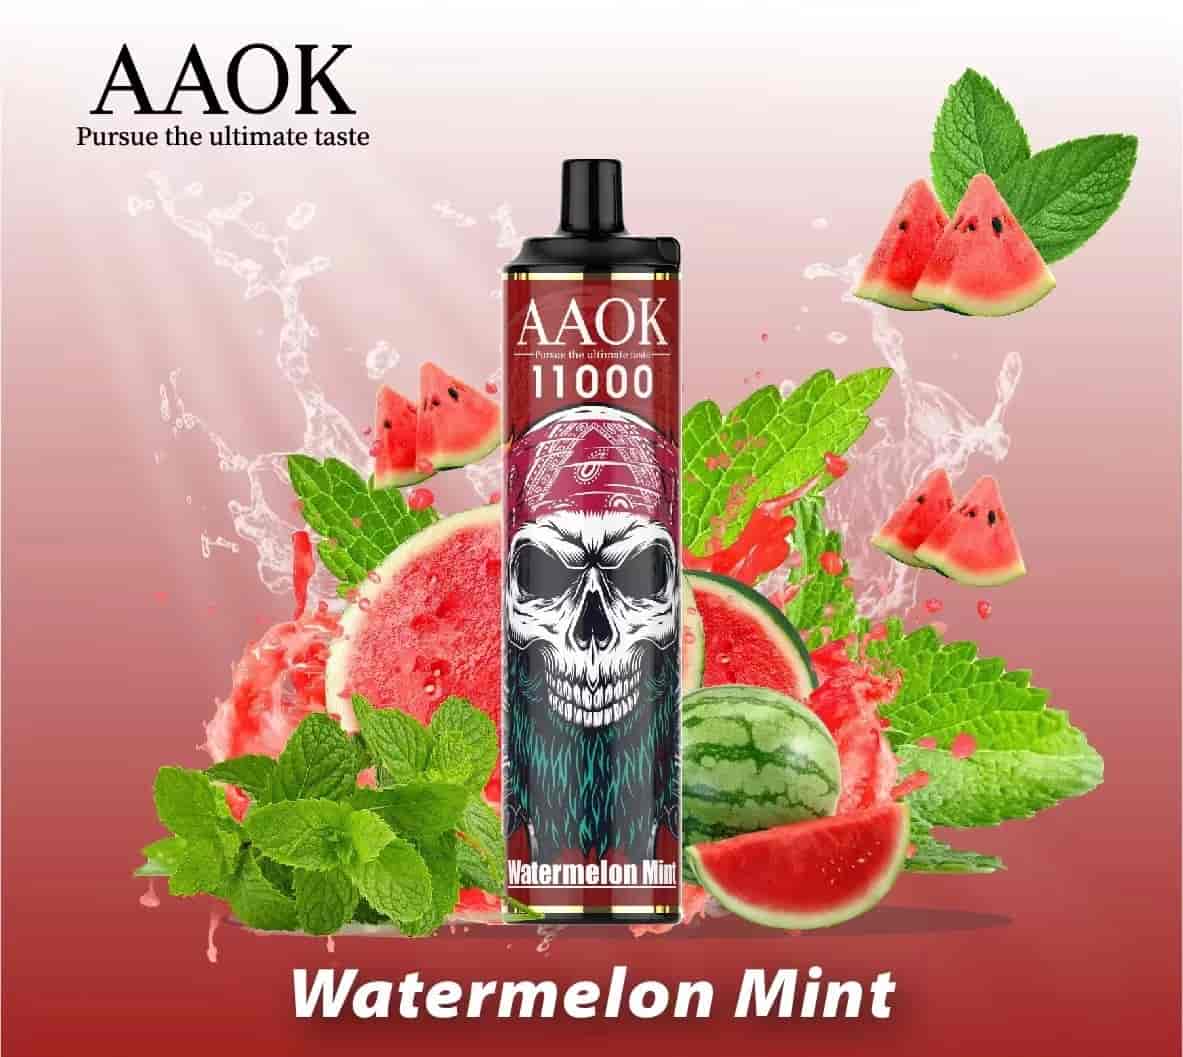 AAOK A83 Watermelon Mint (11000 Puffs)